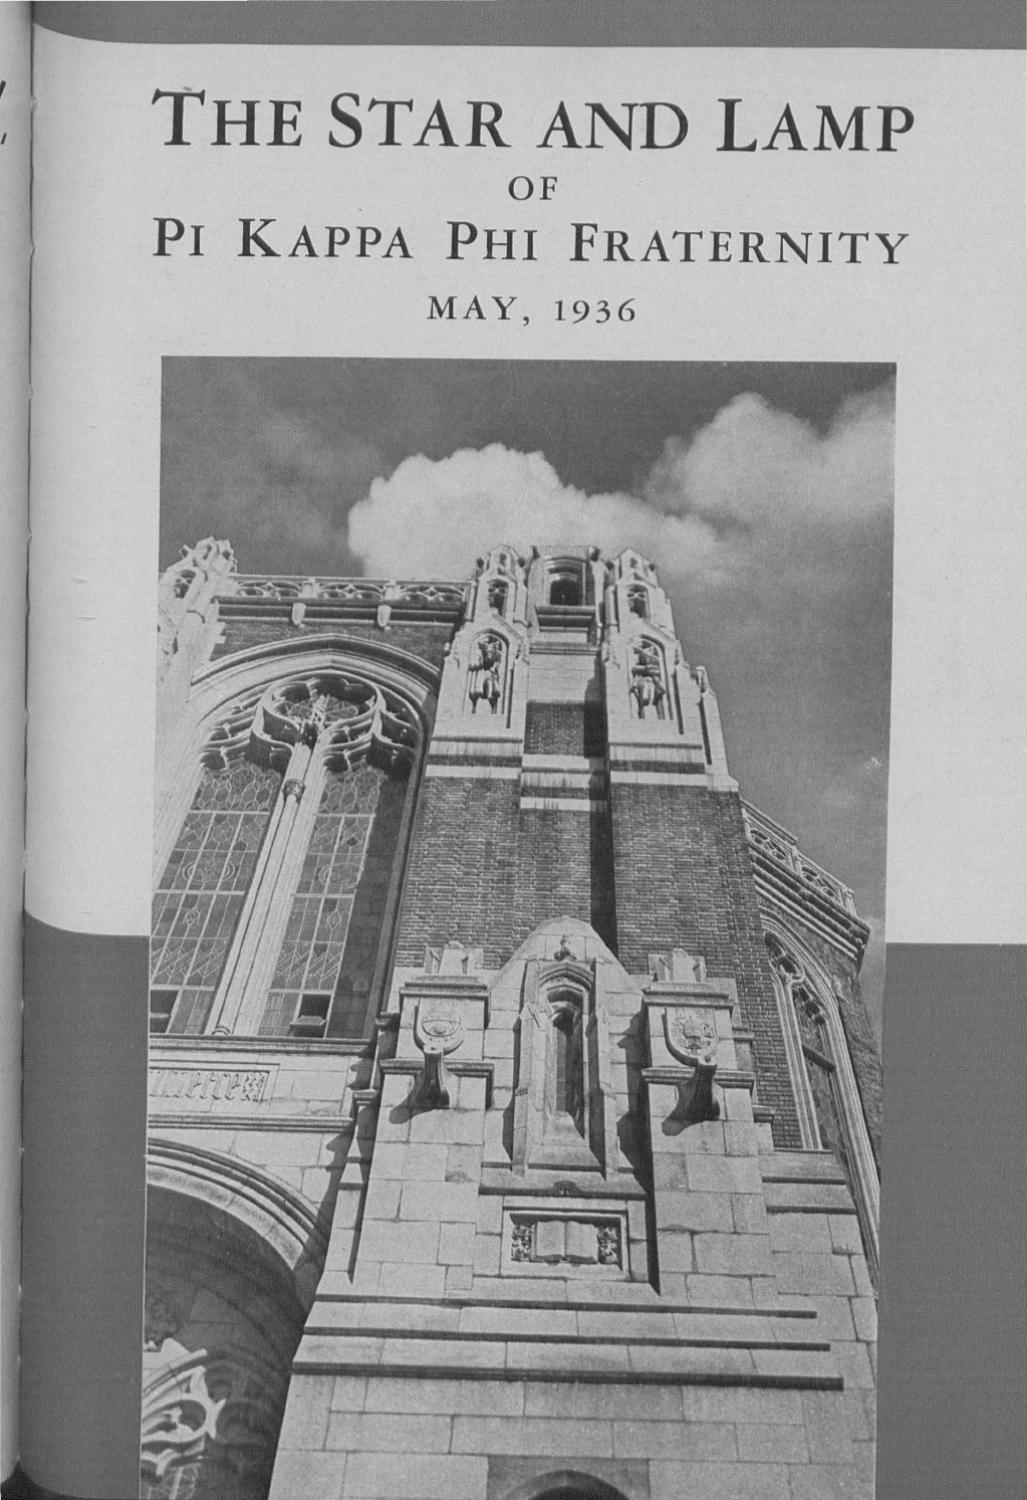 Natick Fireplace Beautiful 1936 2 May by Pi Kappa Phi issuu